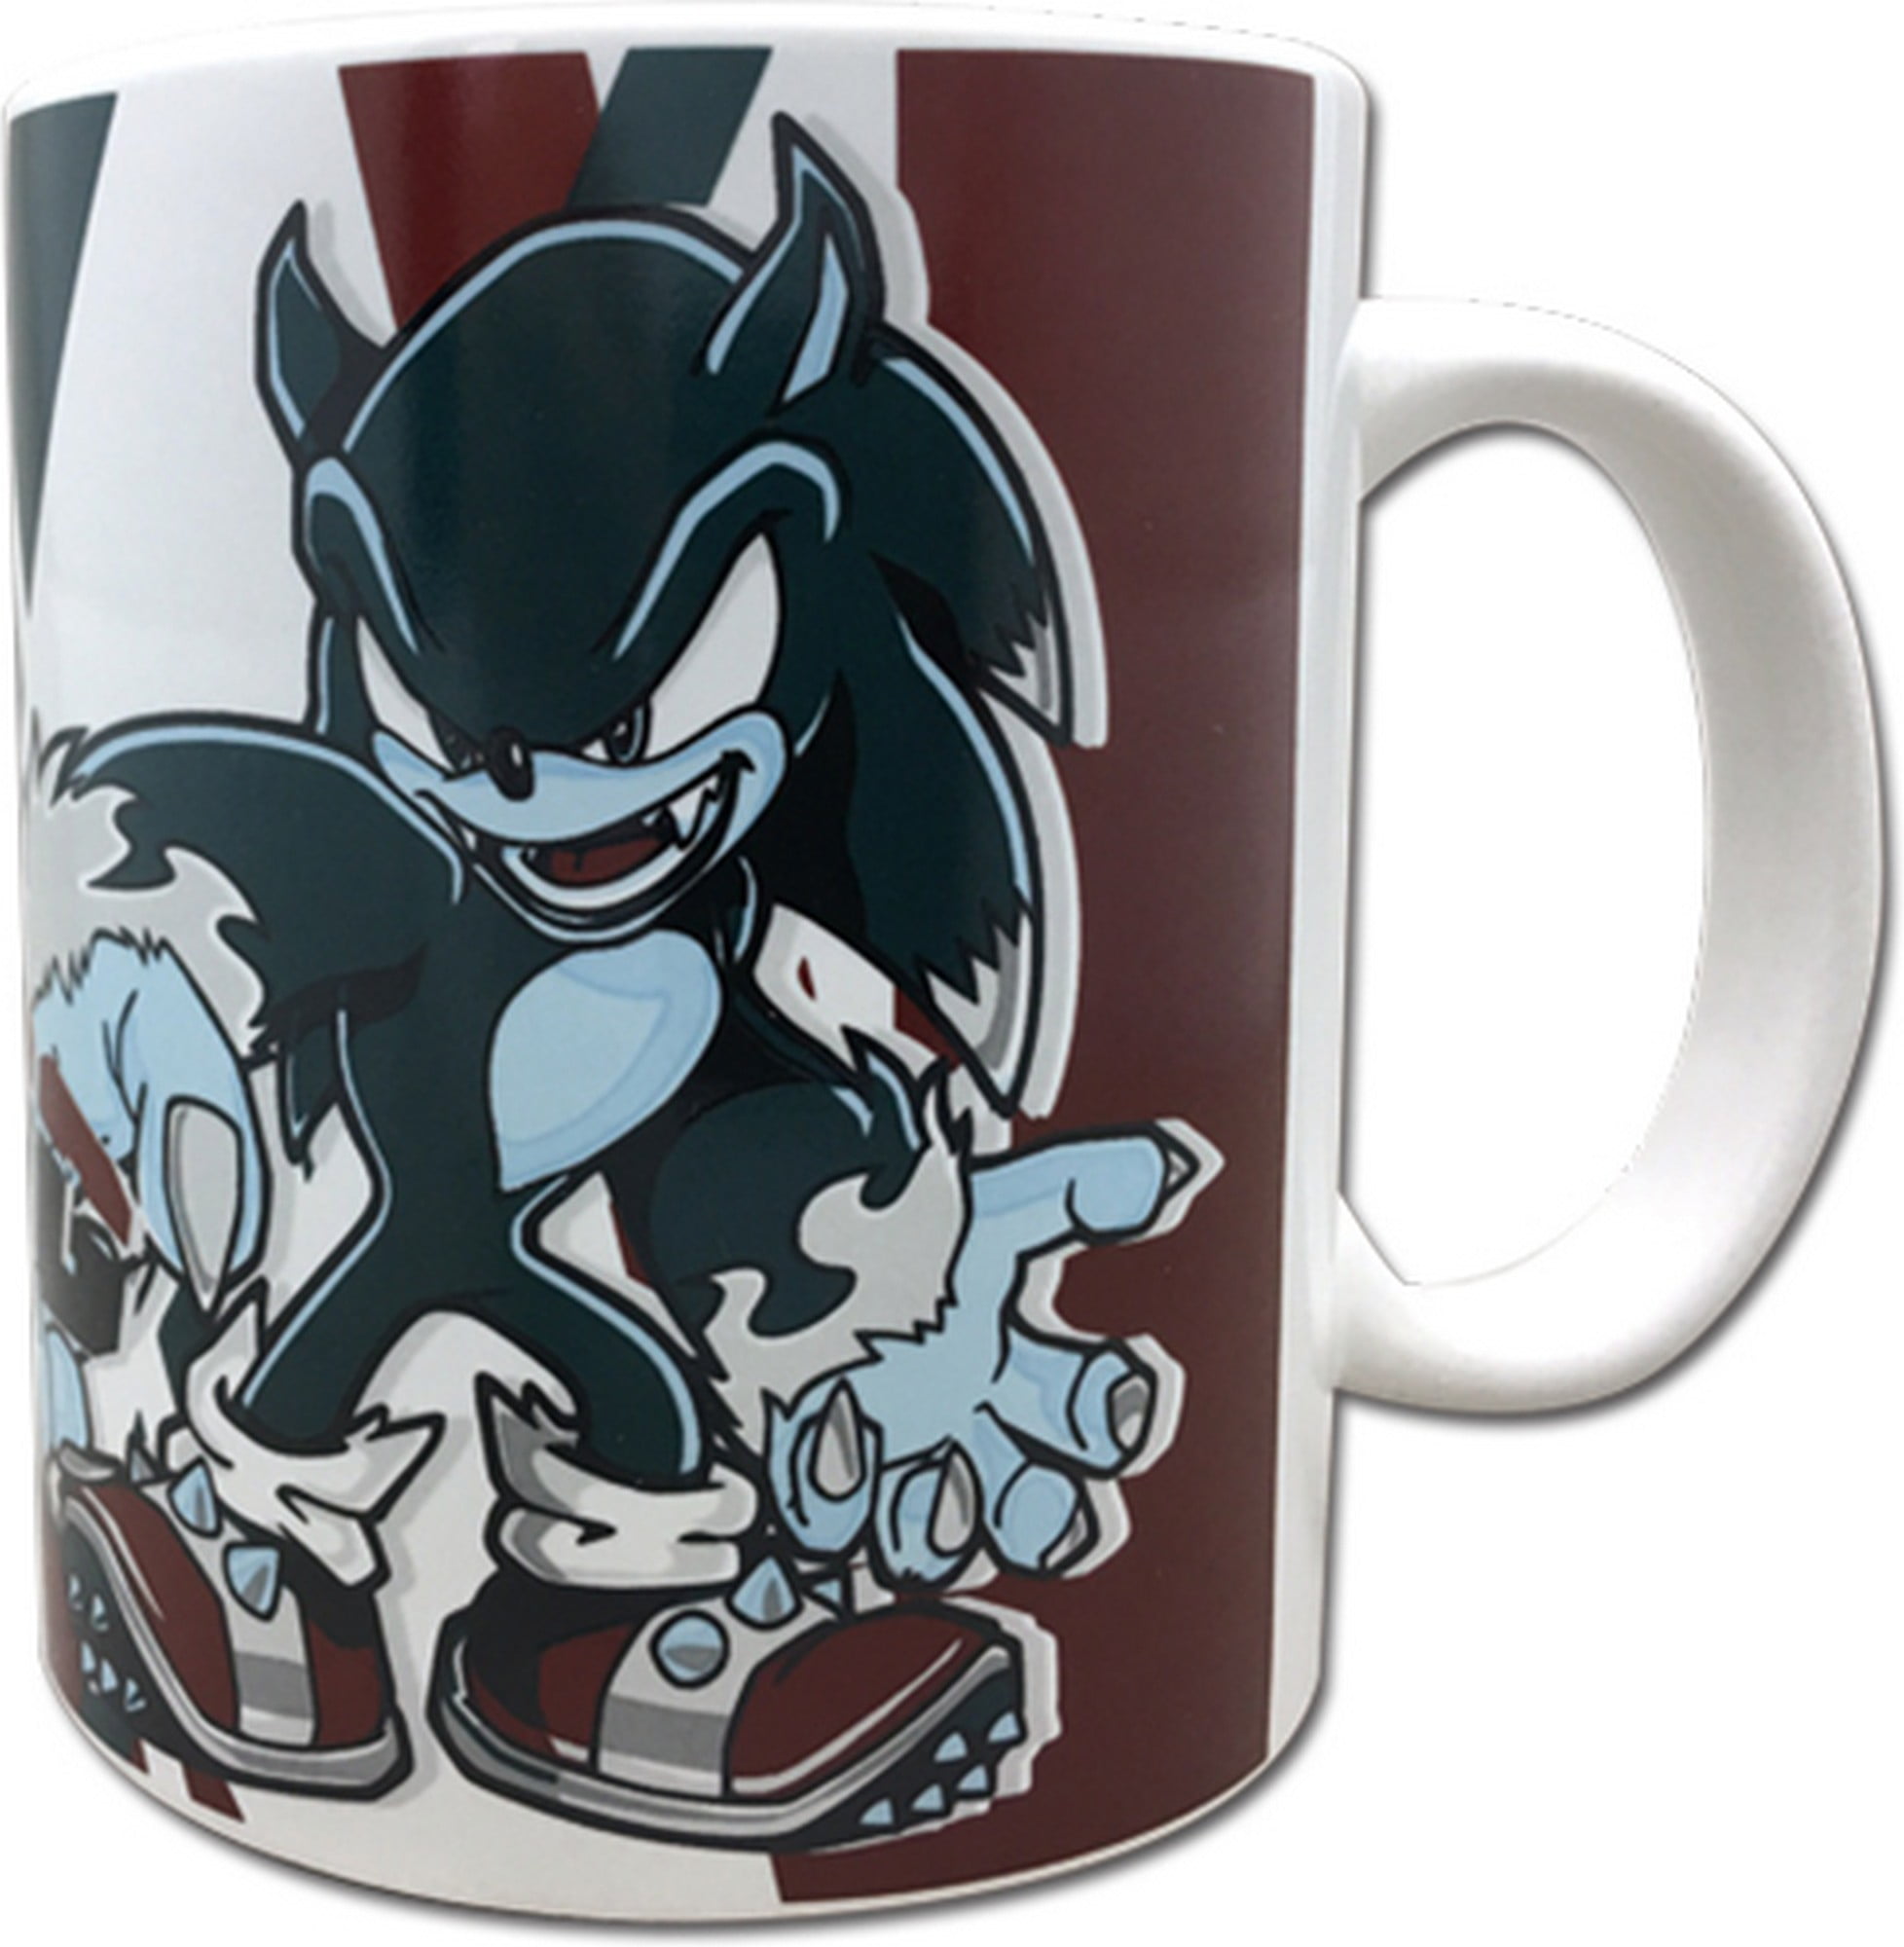 Sonic the Hedgehog - Set mug and socks, 19.90 CHF